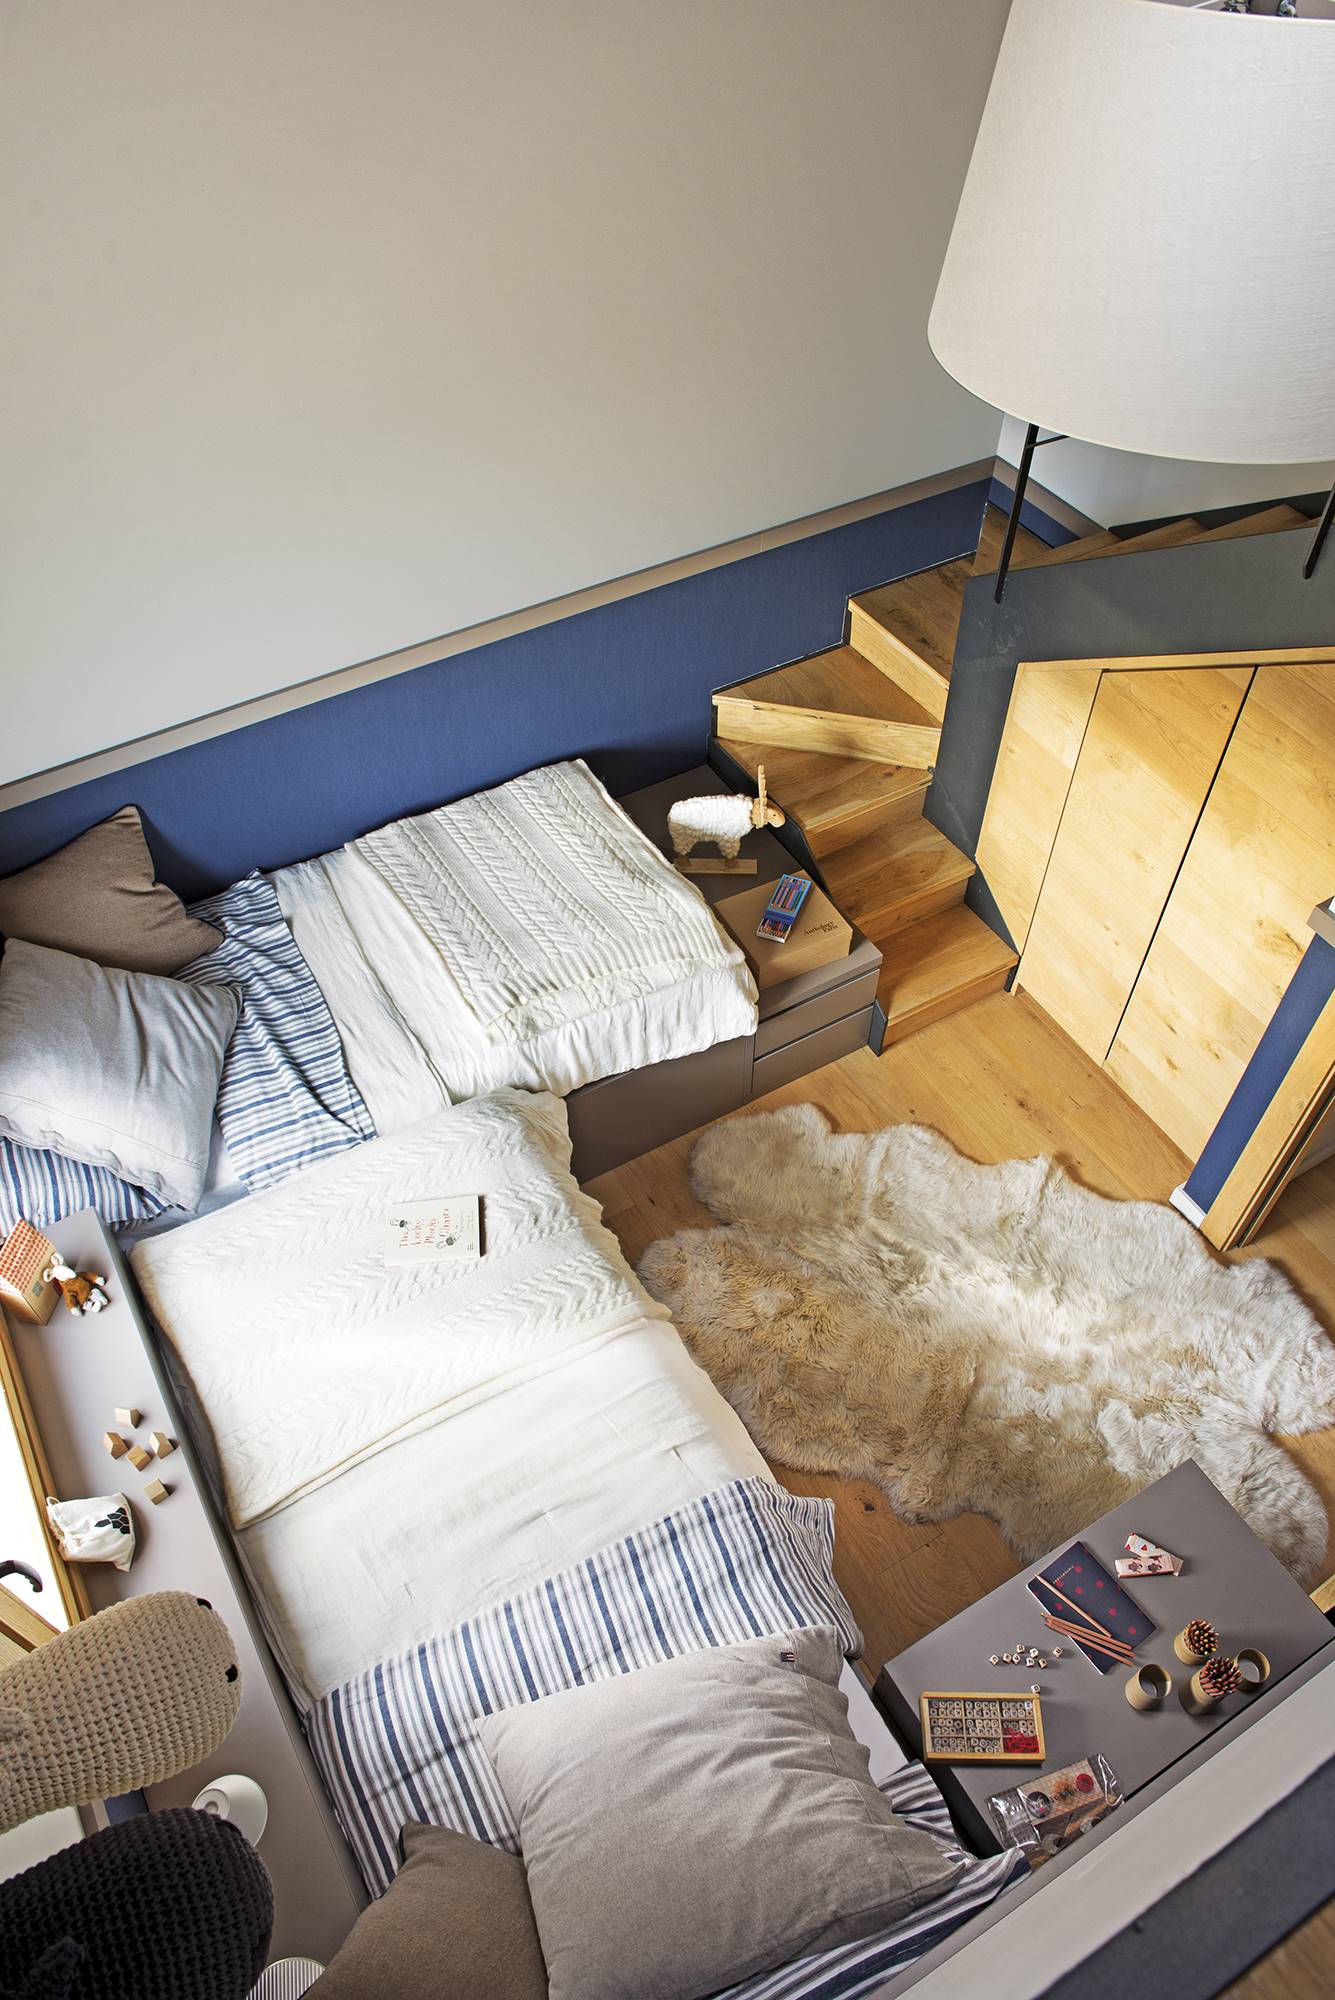 Vista cenital de dormitorio infantil con dos camas en "L" y arrimadero azul. 